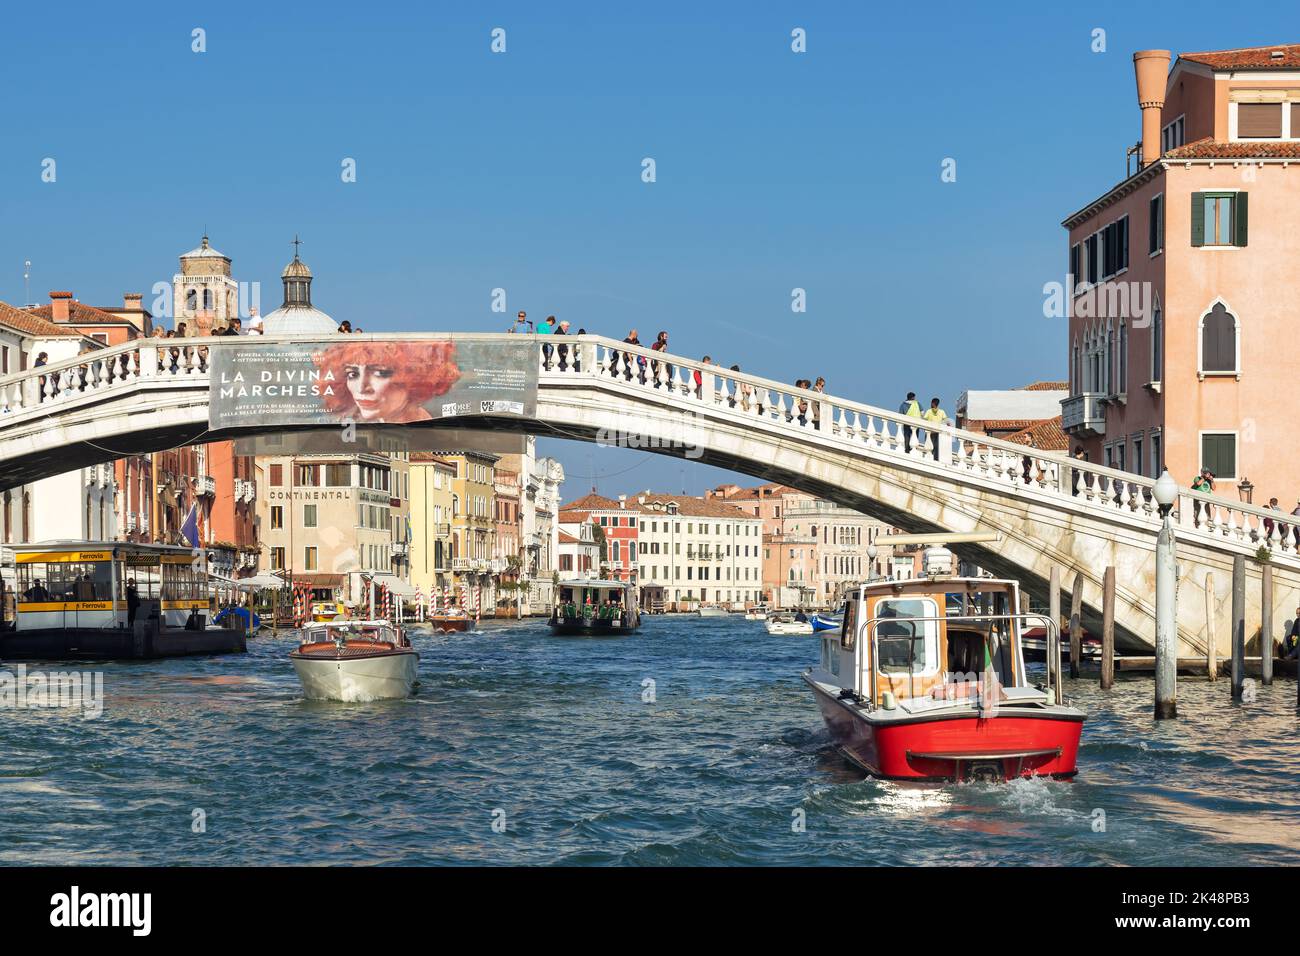 VENISE, ITALIE - 12 OCTOBRE : bateau à moteur longaant le Grand Canal à Venise le 12 octobre 2014. Personnes non identifiées. Banque D'Images